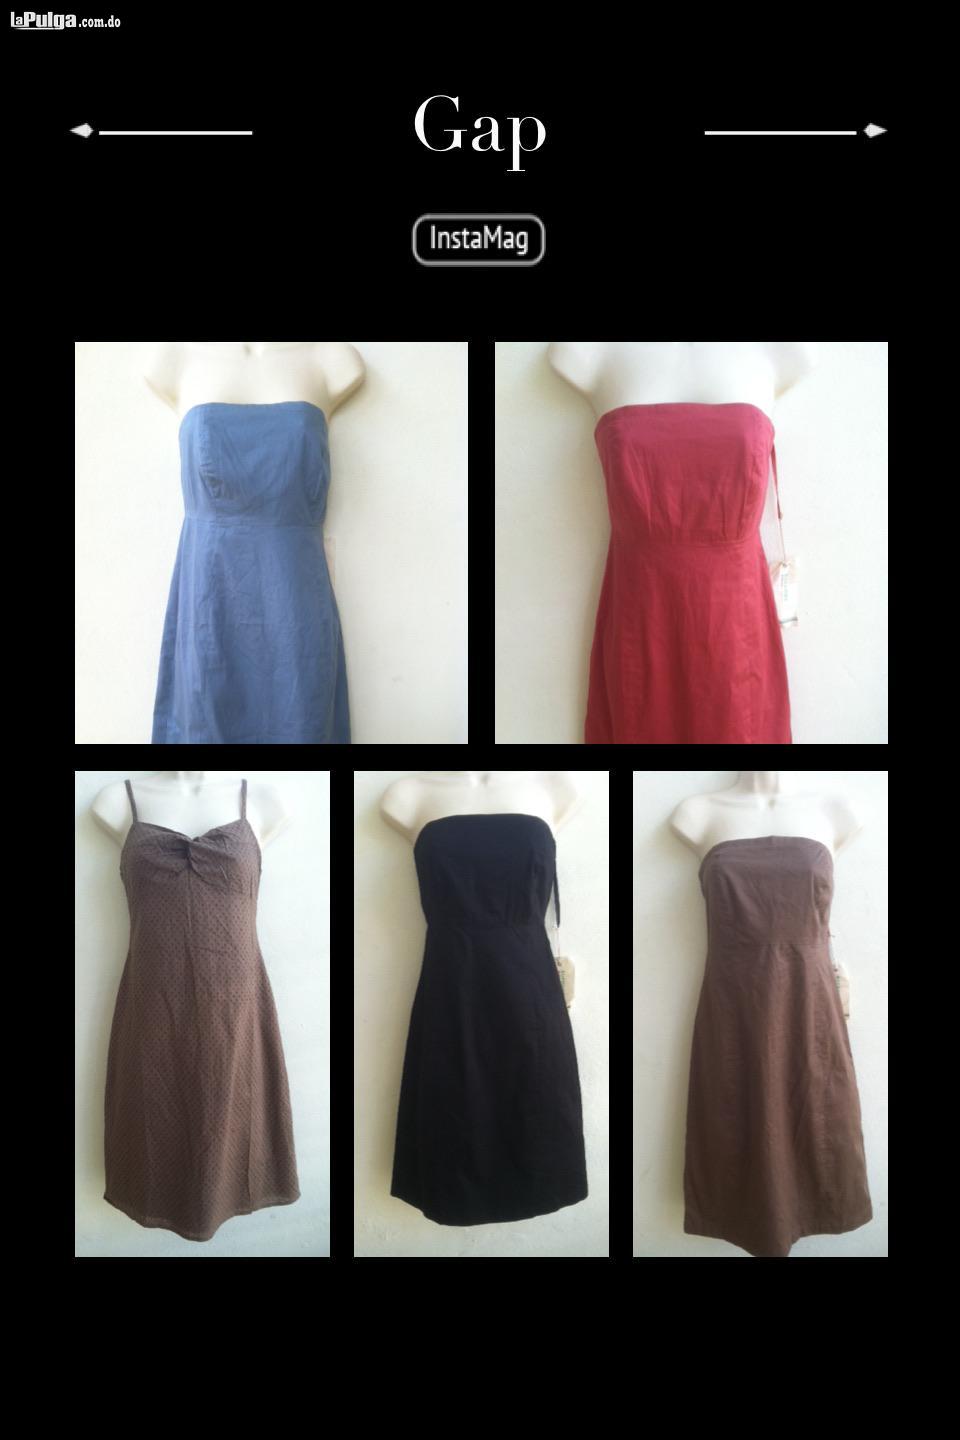 30 Vestidos gap originales no paca de ropa Foto 6815512-1.jpg